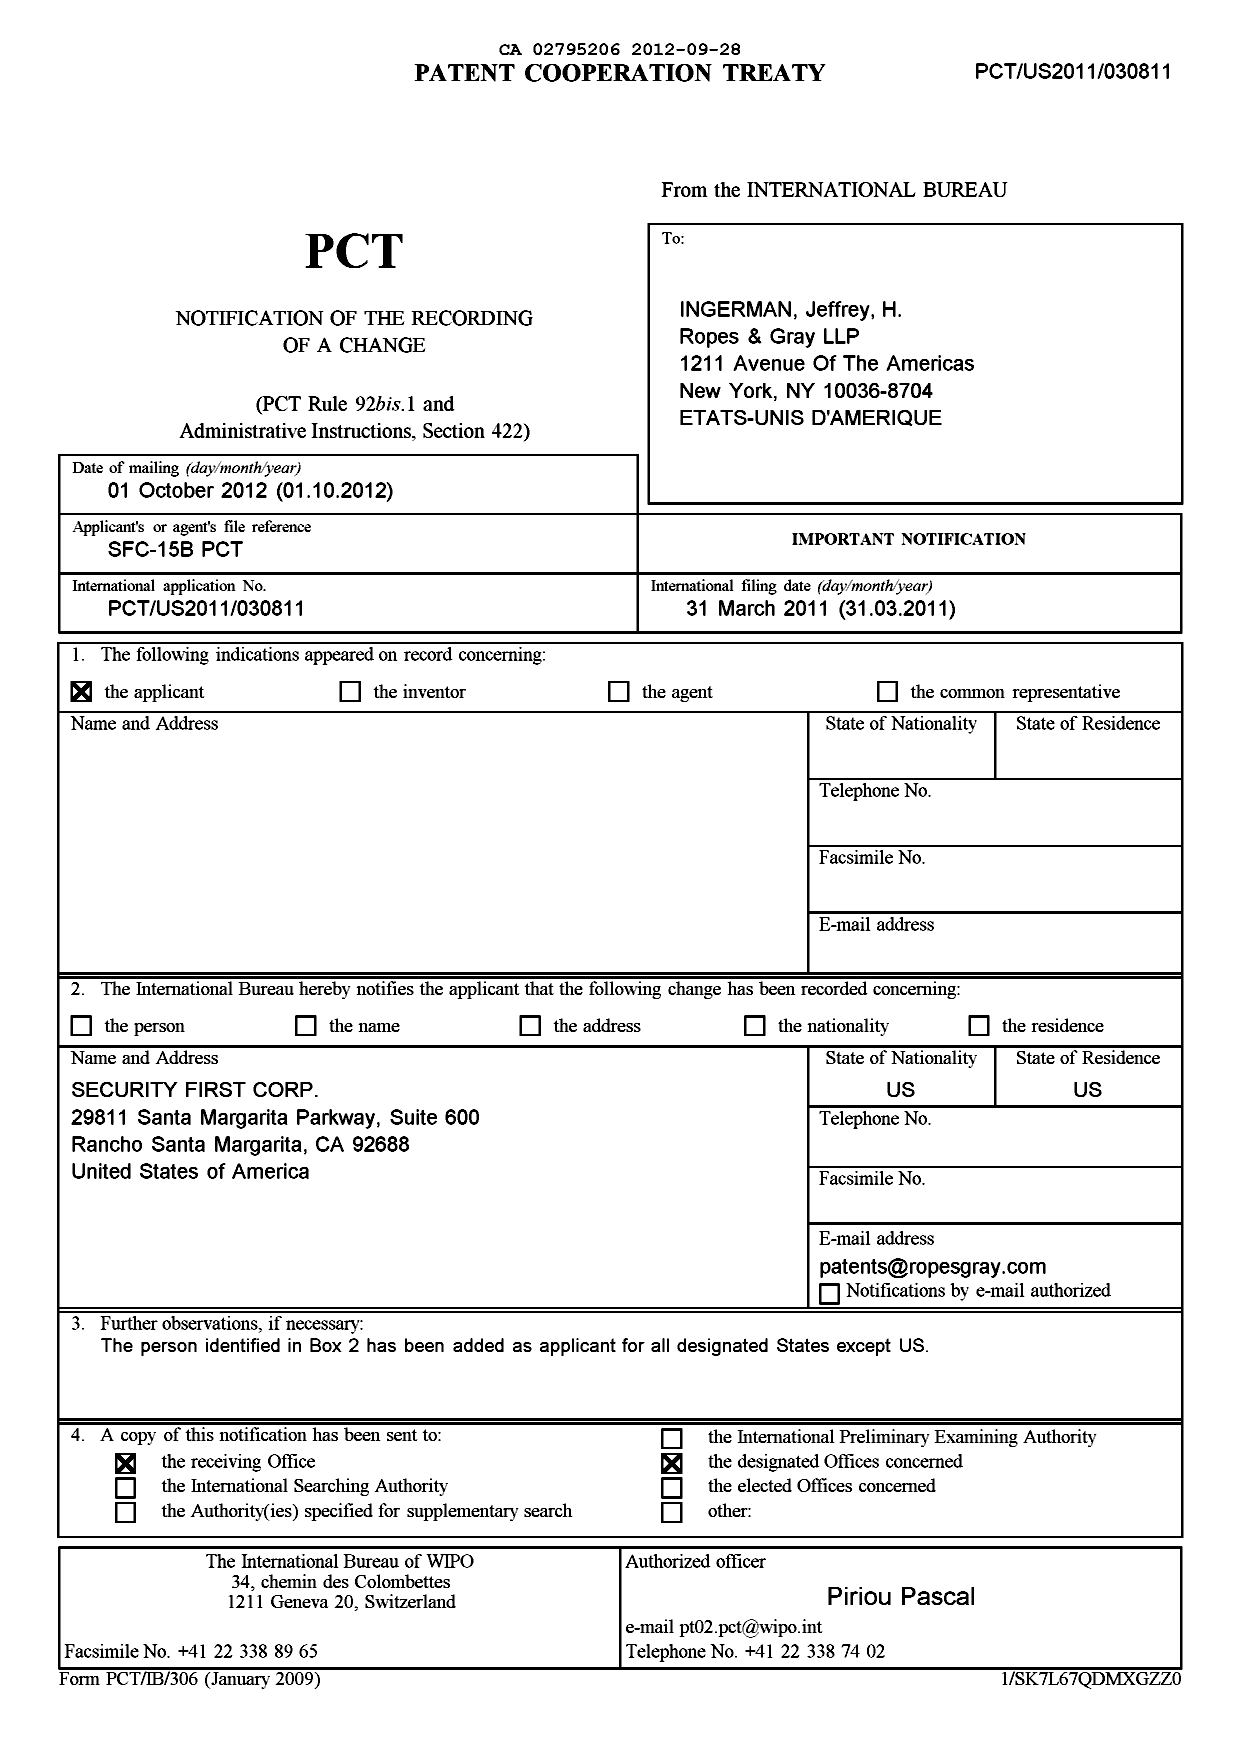 Document de brevet canadien 2795206. PCT 20120928. Image 1 de 18